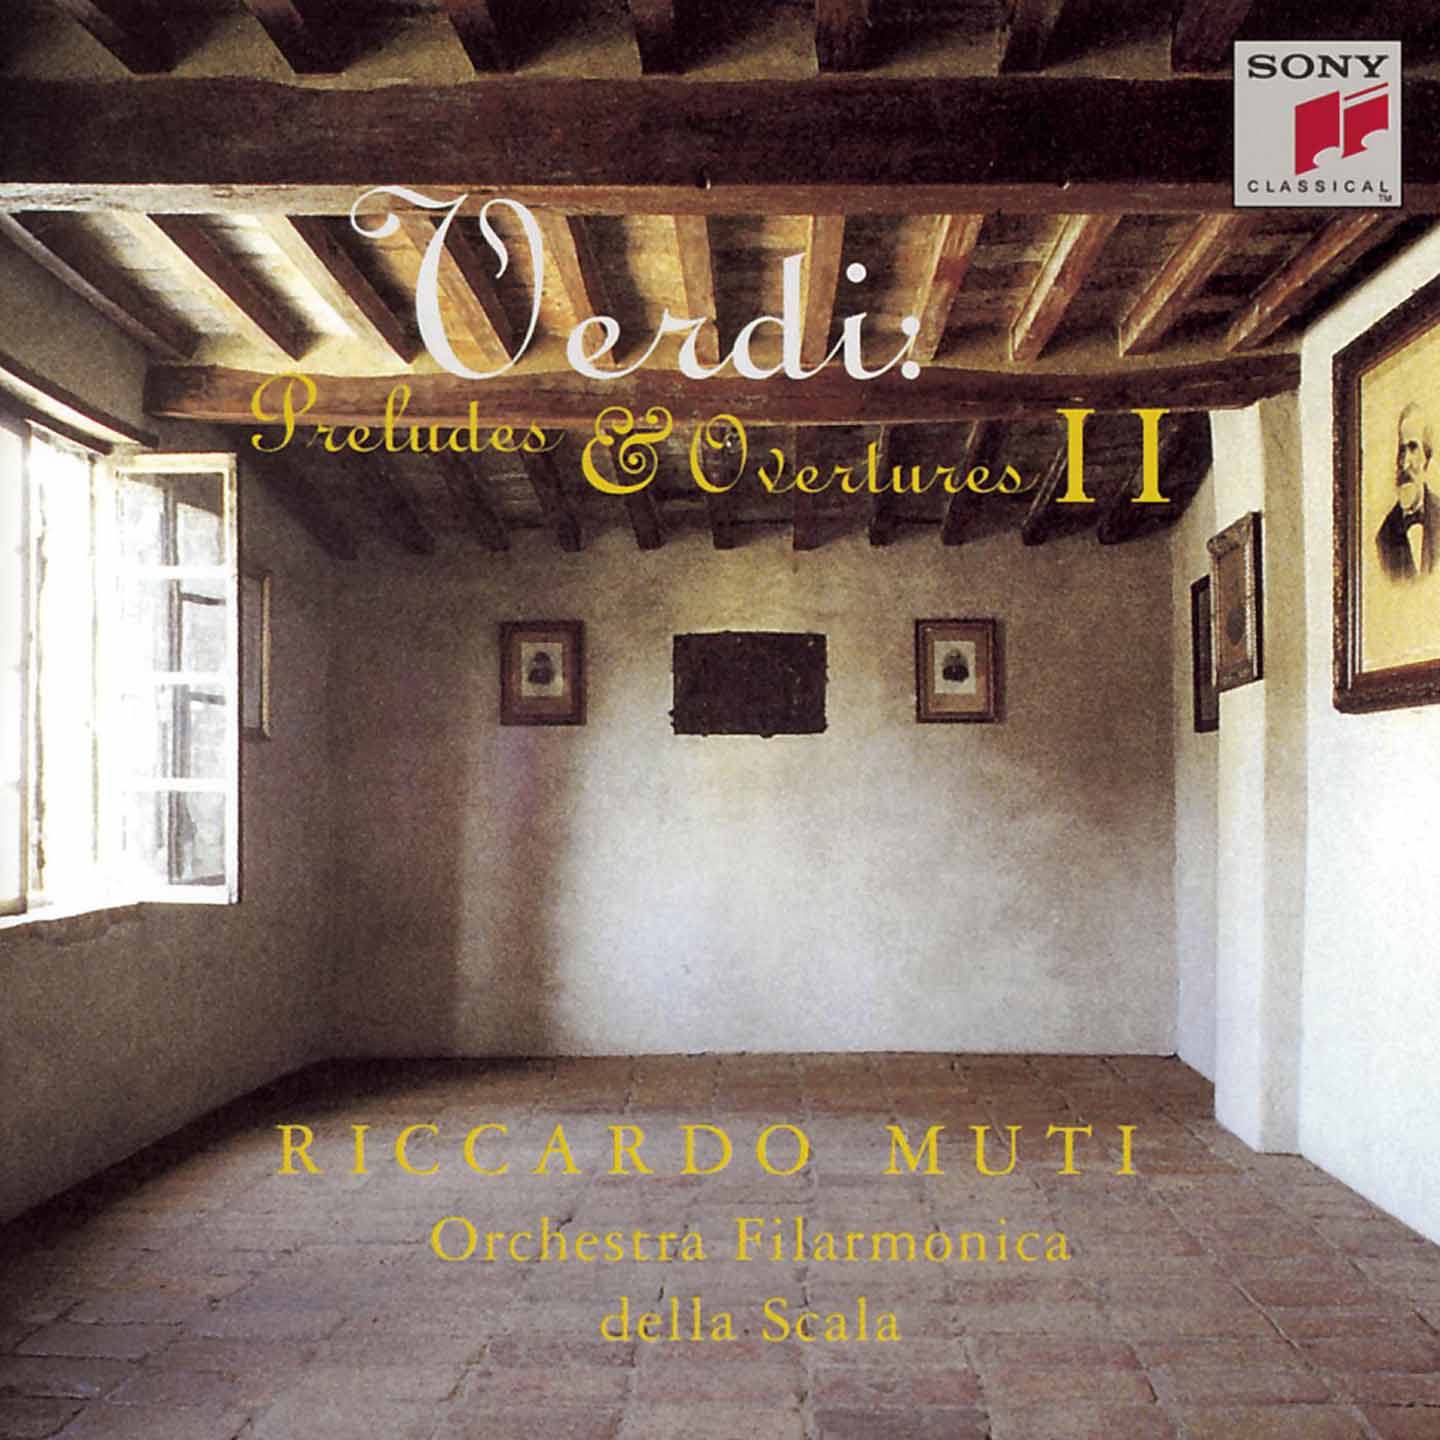 Verdi: Overtures & Preludes, Vol. 2, Muti/La Scala (CD)